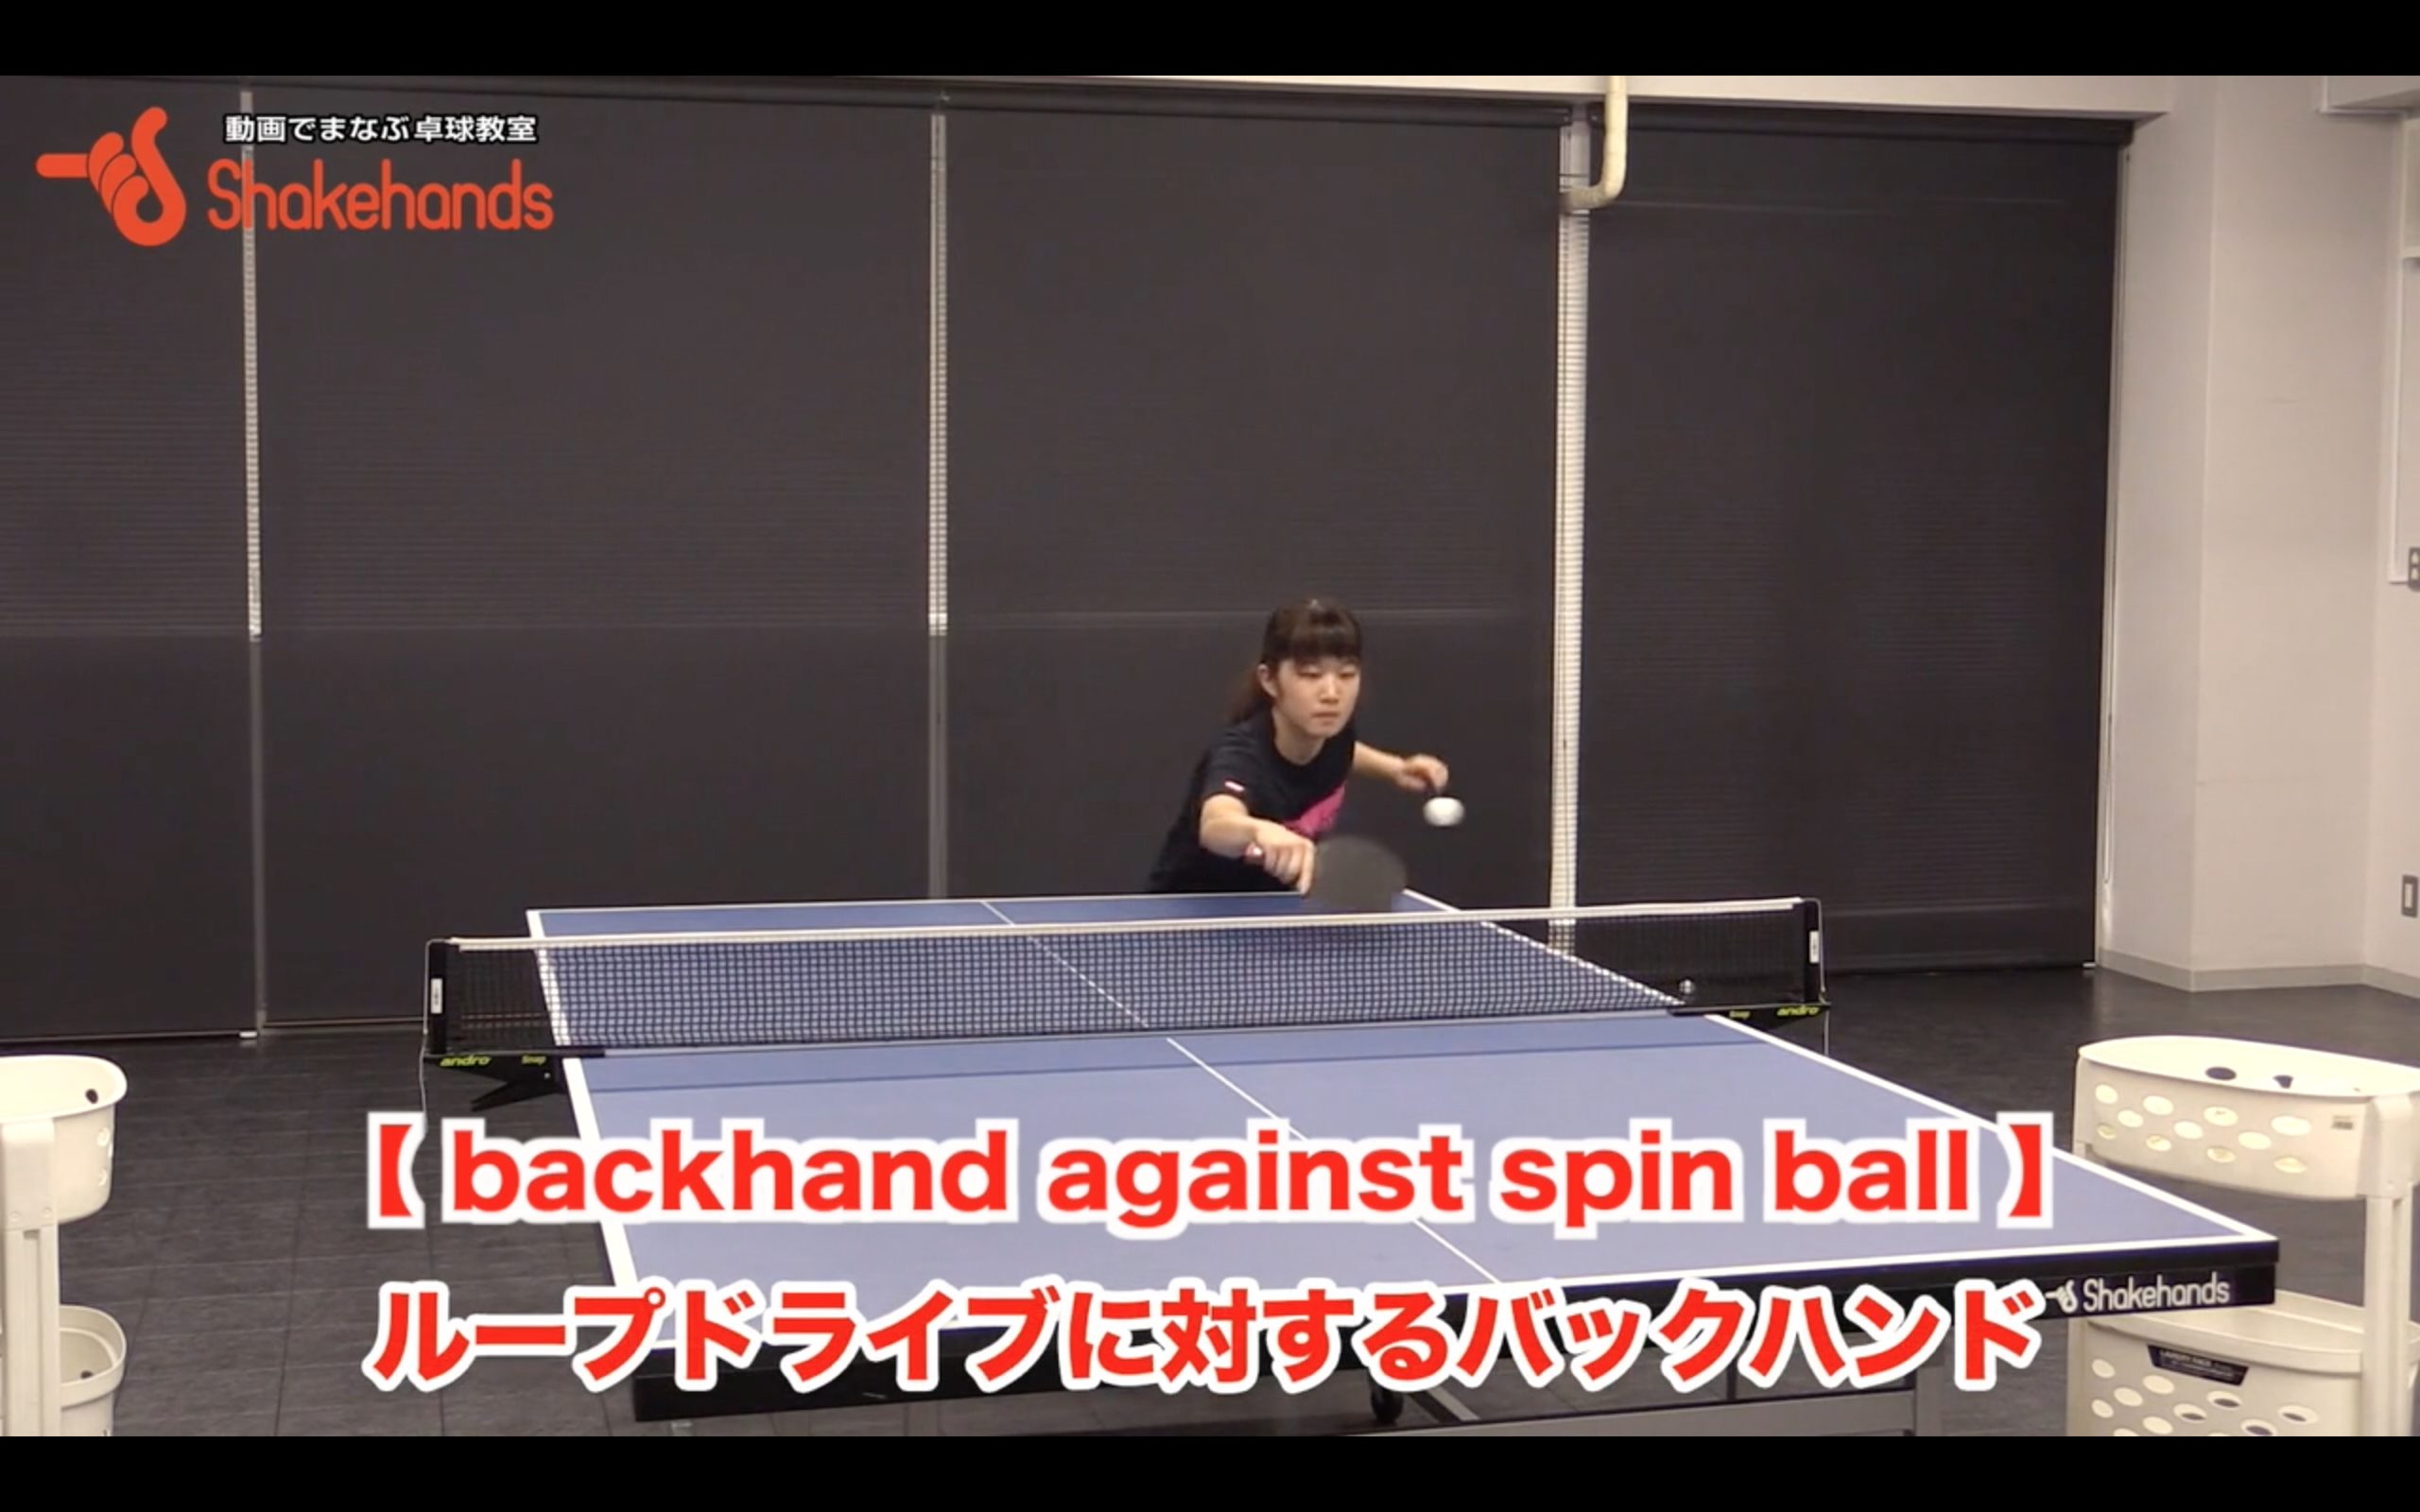 Backhand block against spin ball